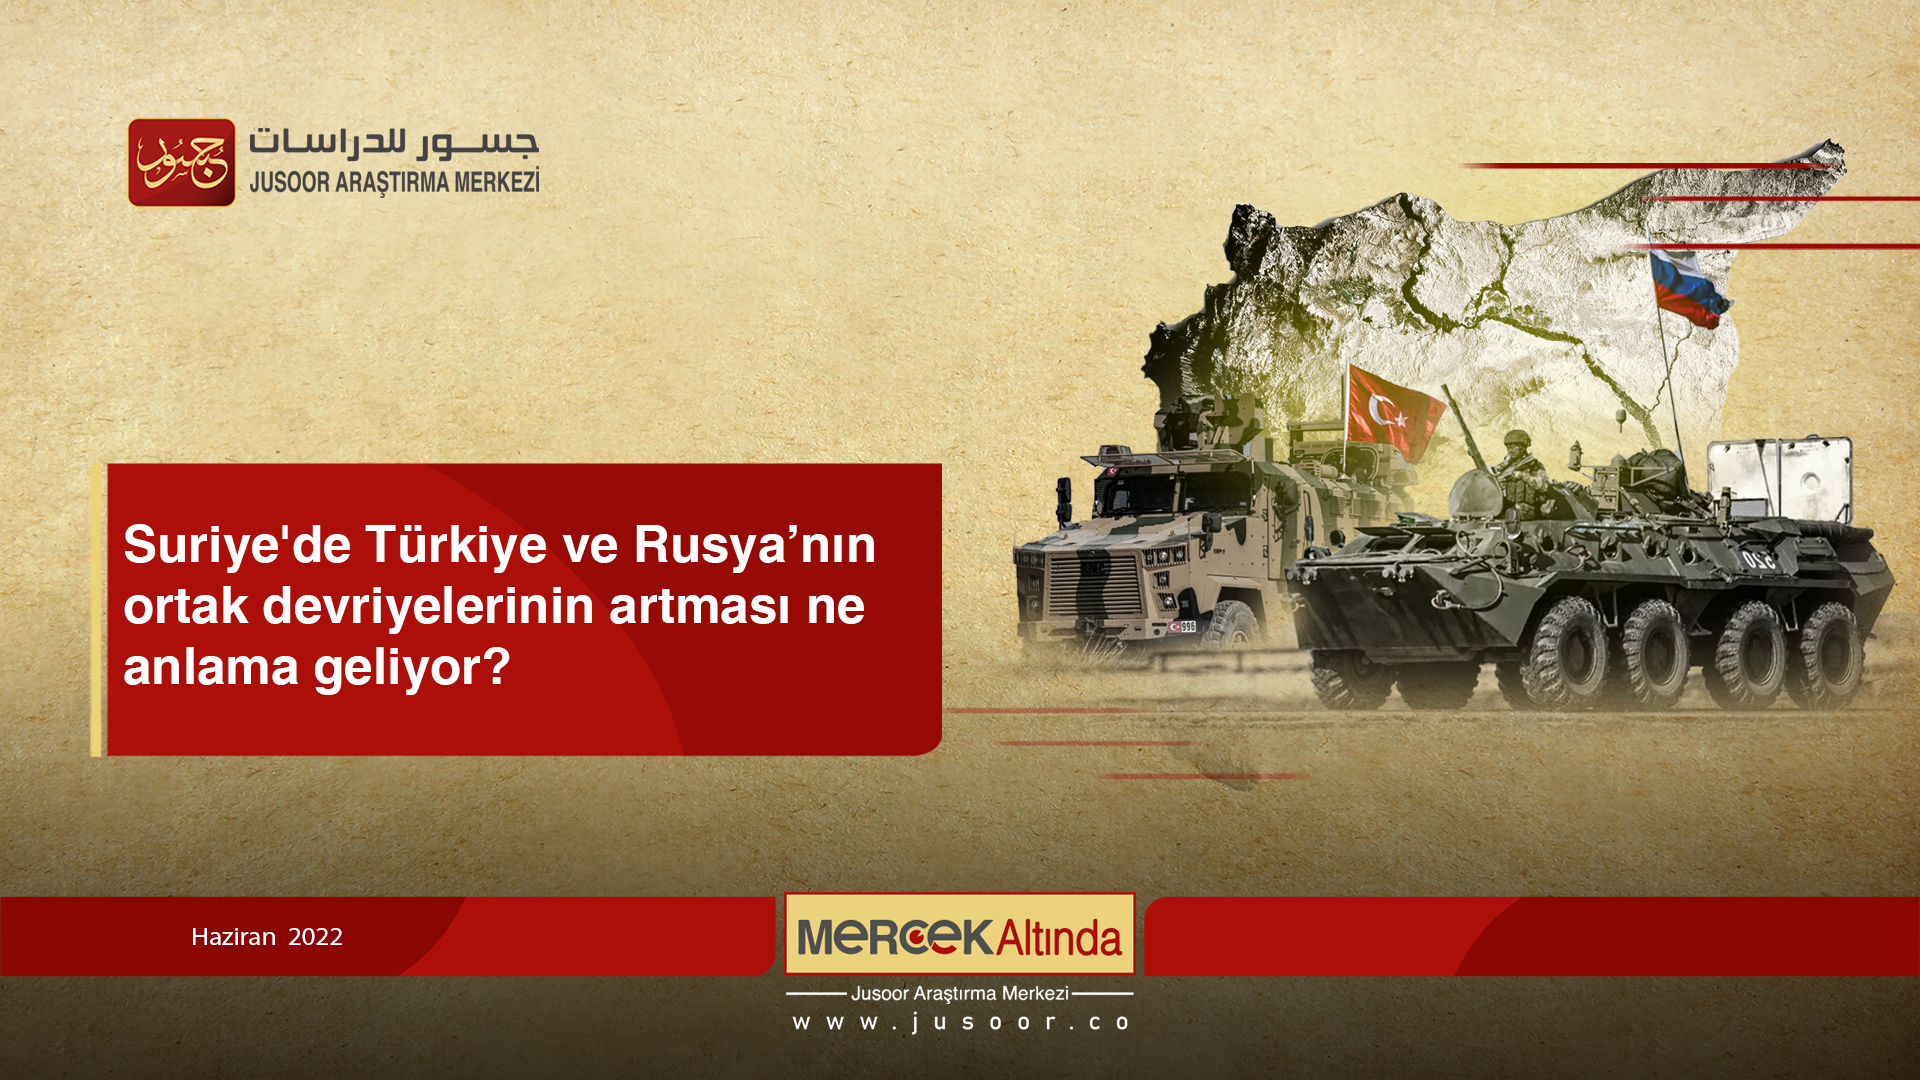 Suriye'de Türkiye ve Rusya’nın ortak devriyelerinin artması ne anlama geliyor?